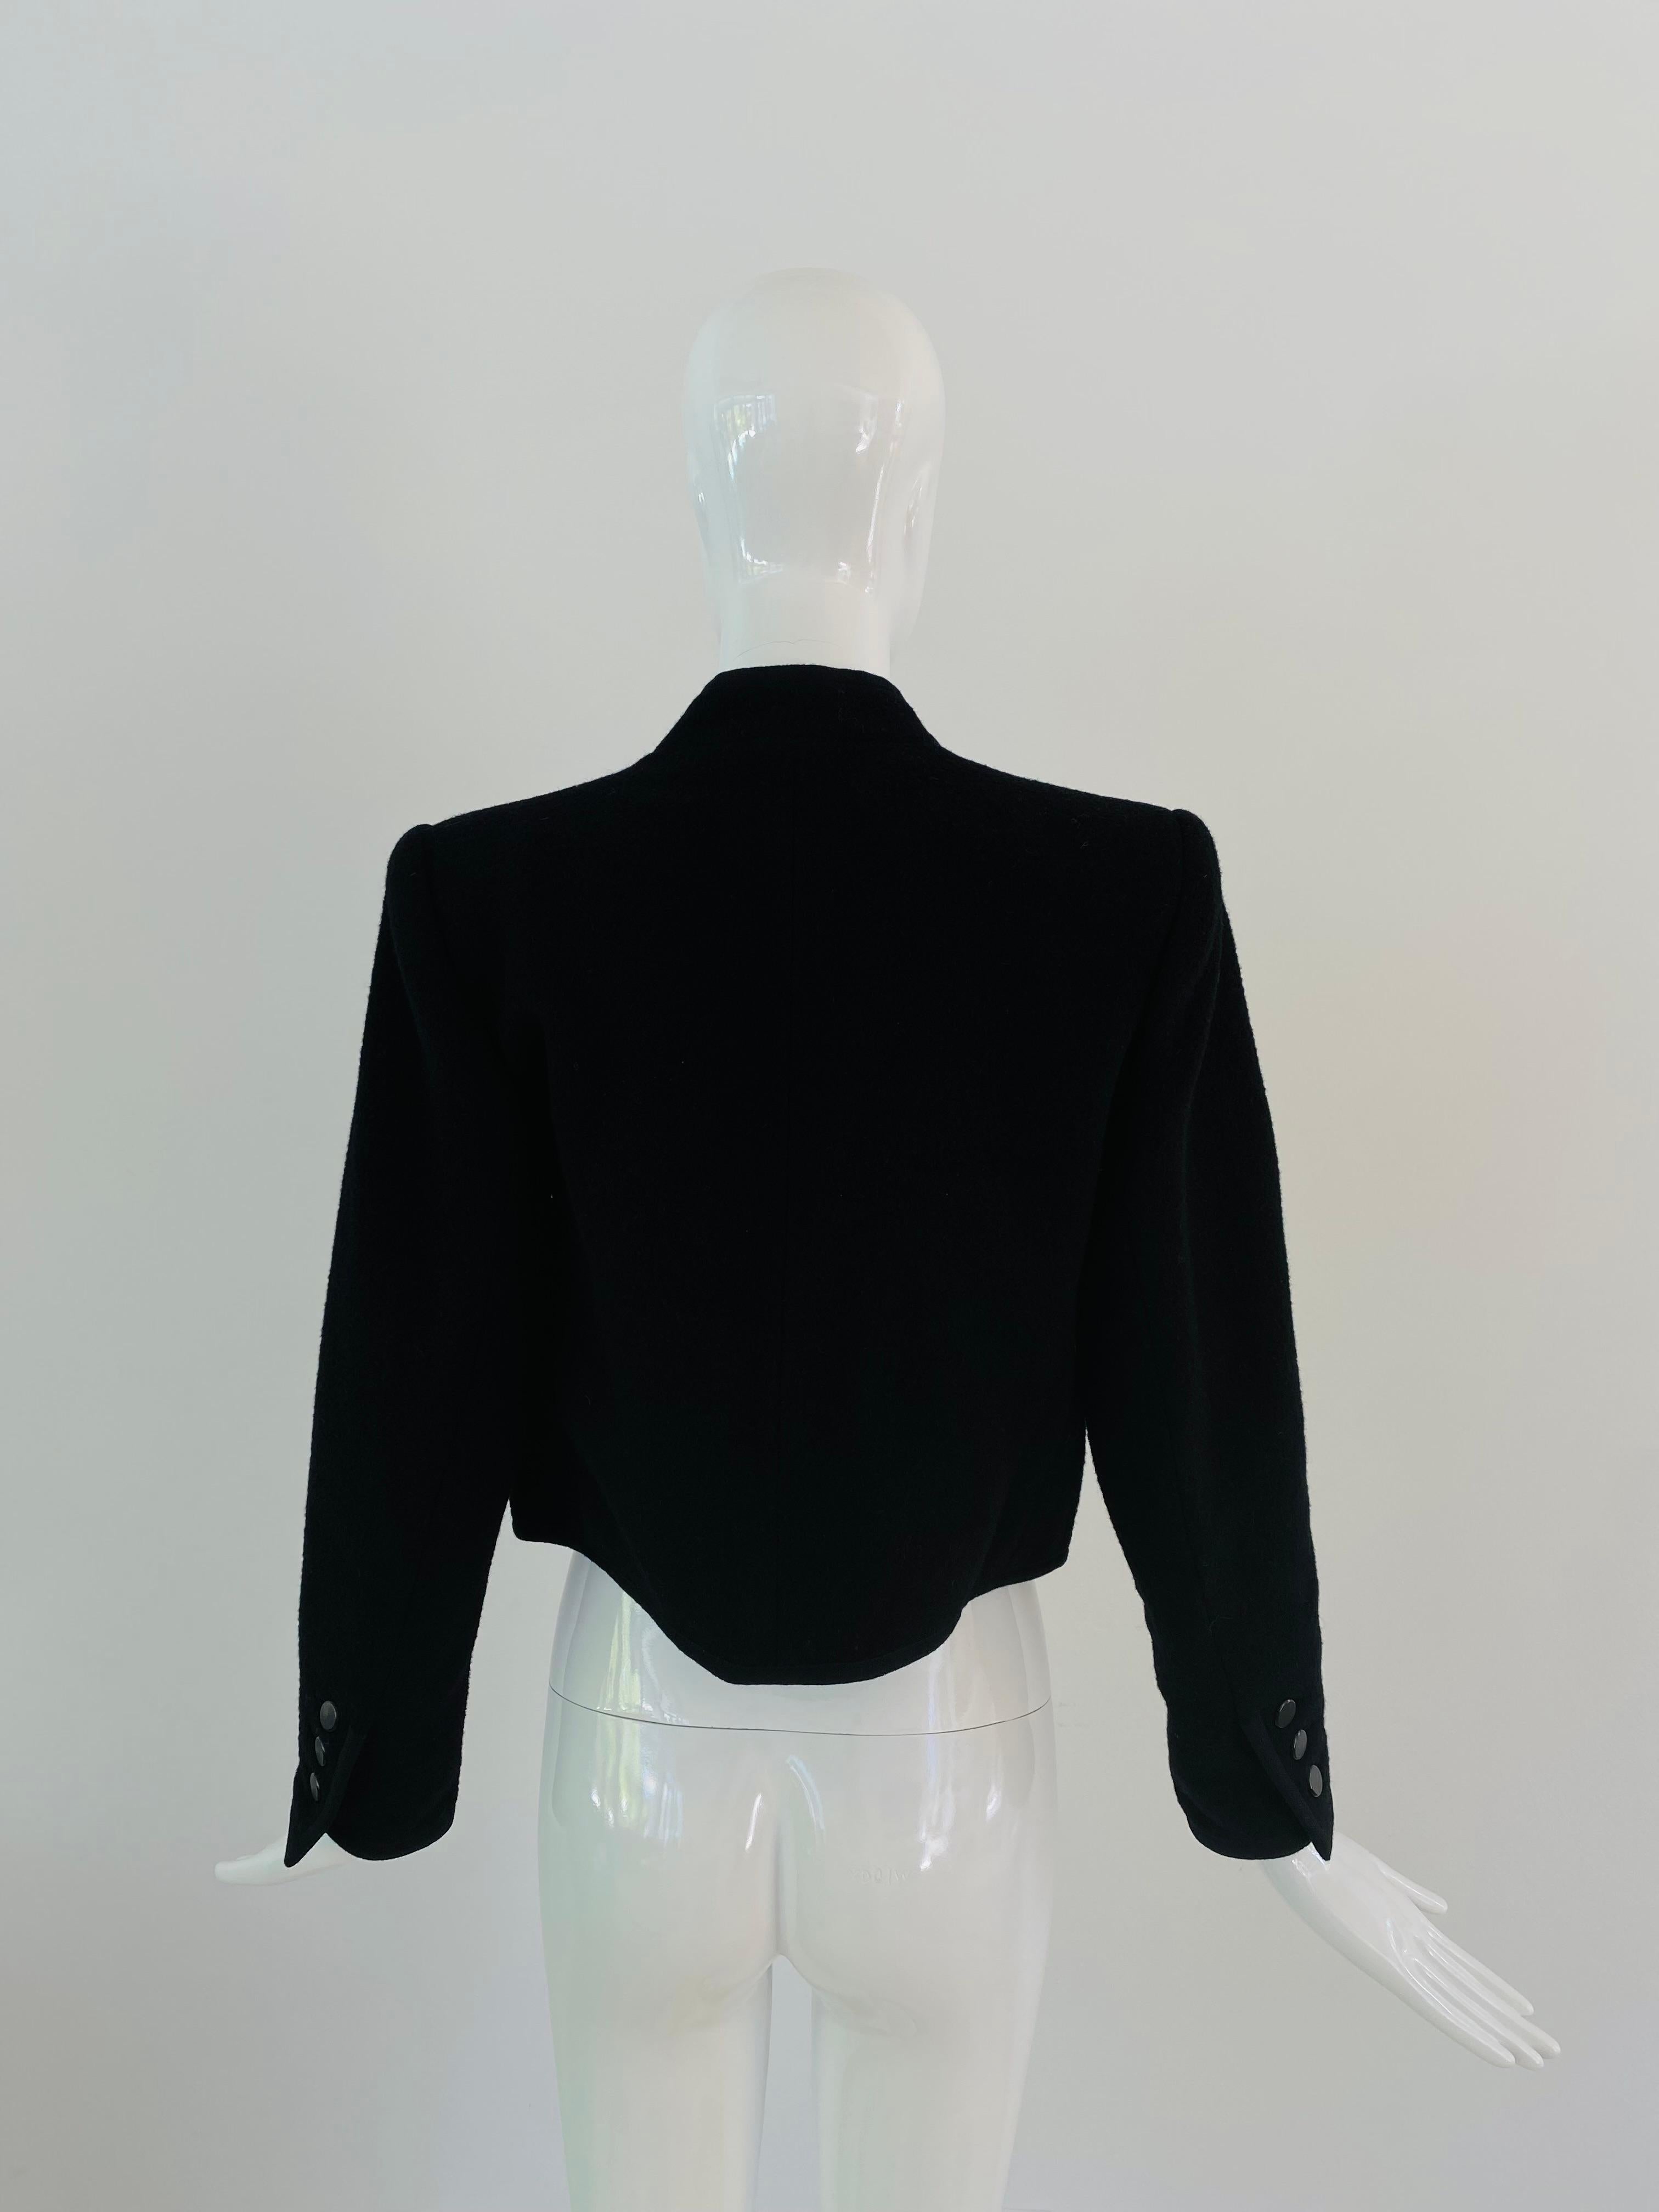 Veste en laine noire de style boléro Saint Laurent Rive Gauche des années 1970 achetée dans la salle Oval Room de Dayton, le troisième étage huppé d'un grand magasin haut de gamme de Minneapolis qui n'est plus en activité. Cette photo semble